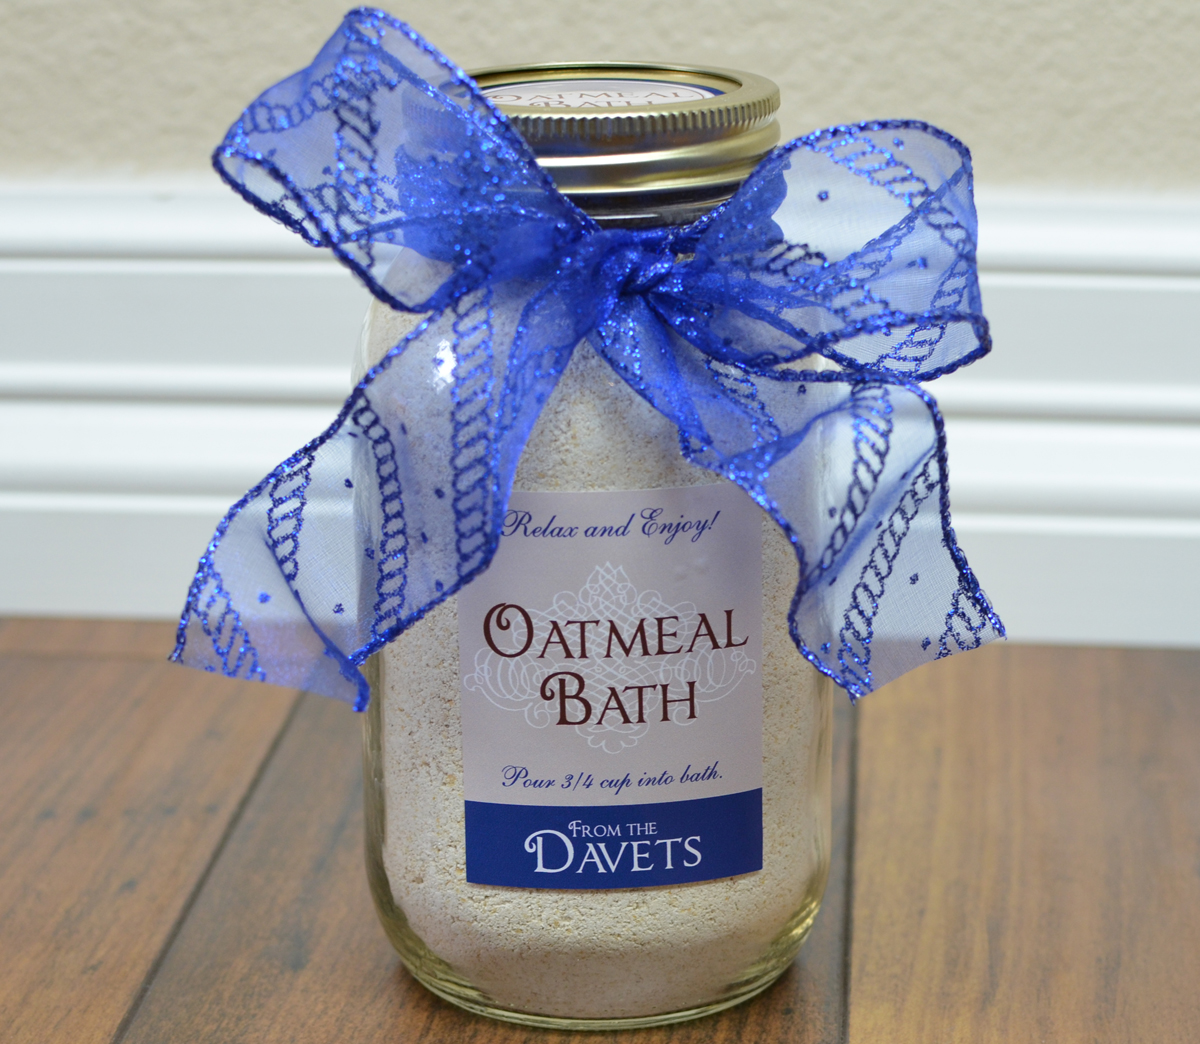 Oatmeal Bath gift in a jar